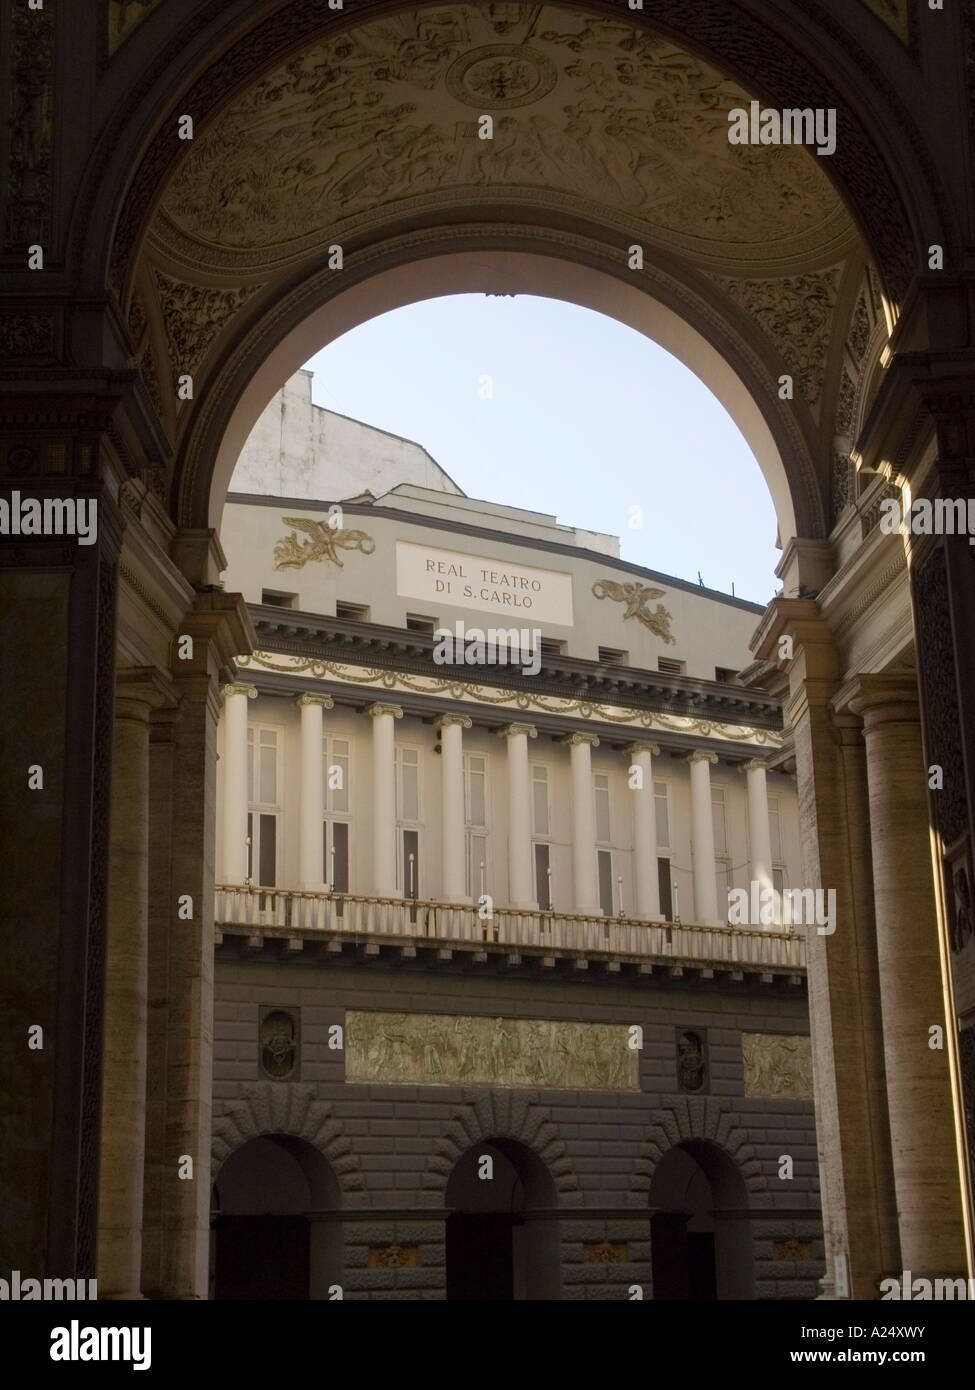 La célèbre lirica Théâtre San Carlo, à Naples, au sud de l'Italie, suggestive vue depuis la galerie Umberto. Banque D'Images